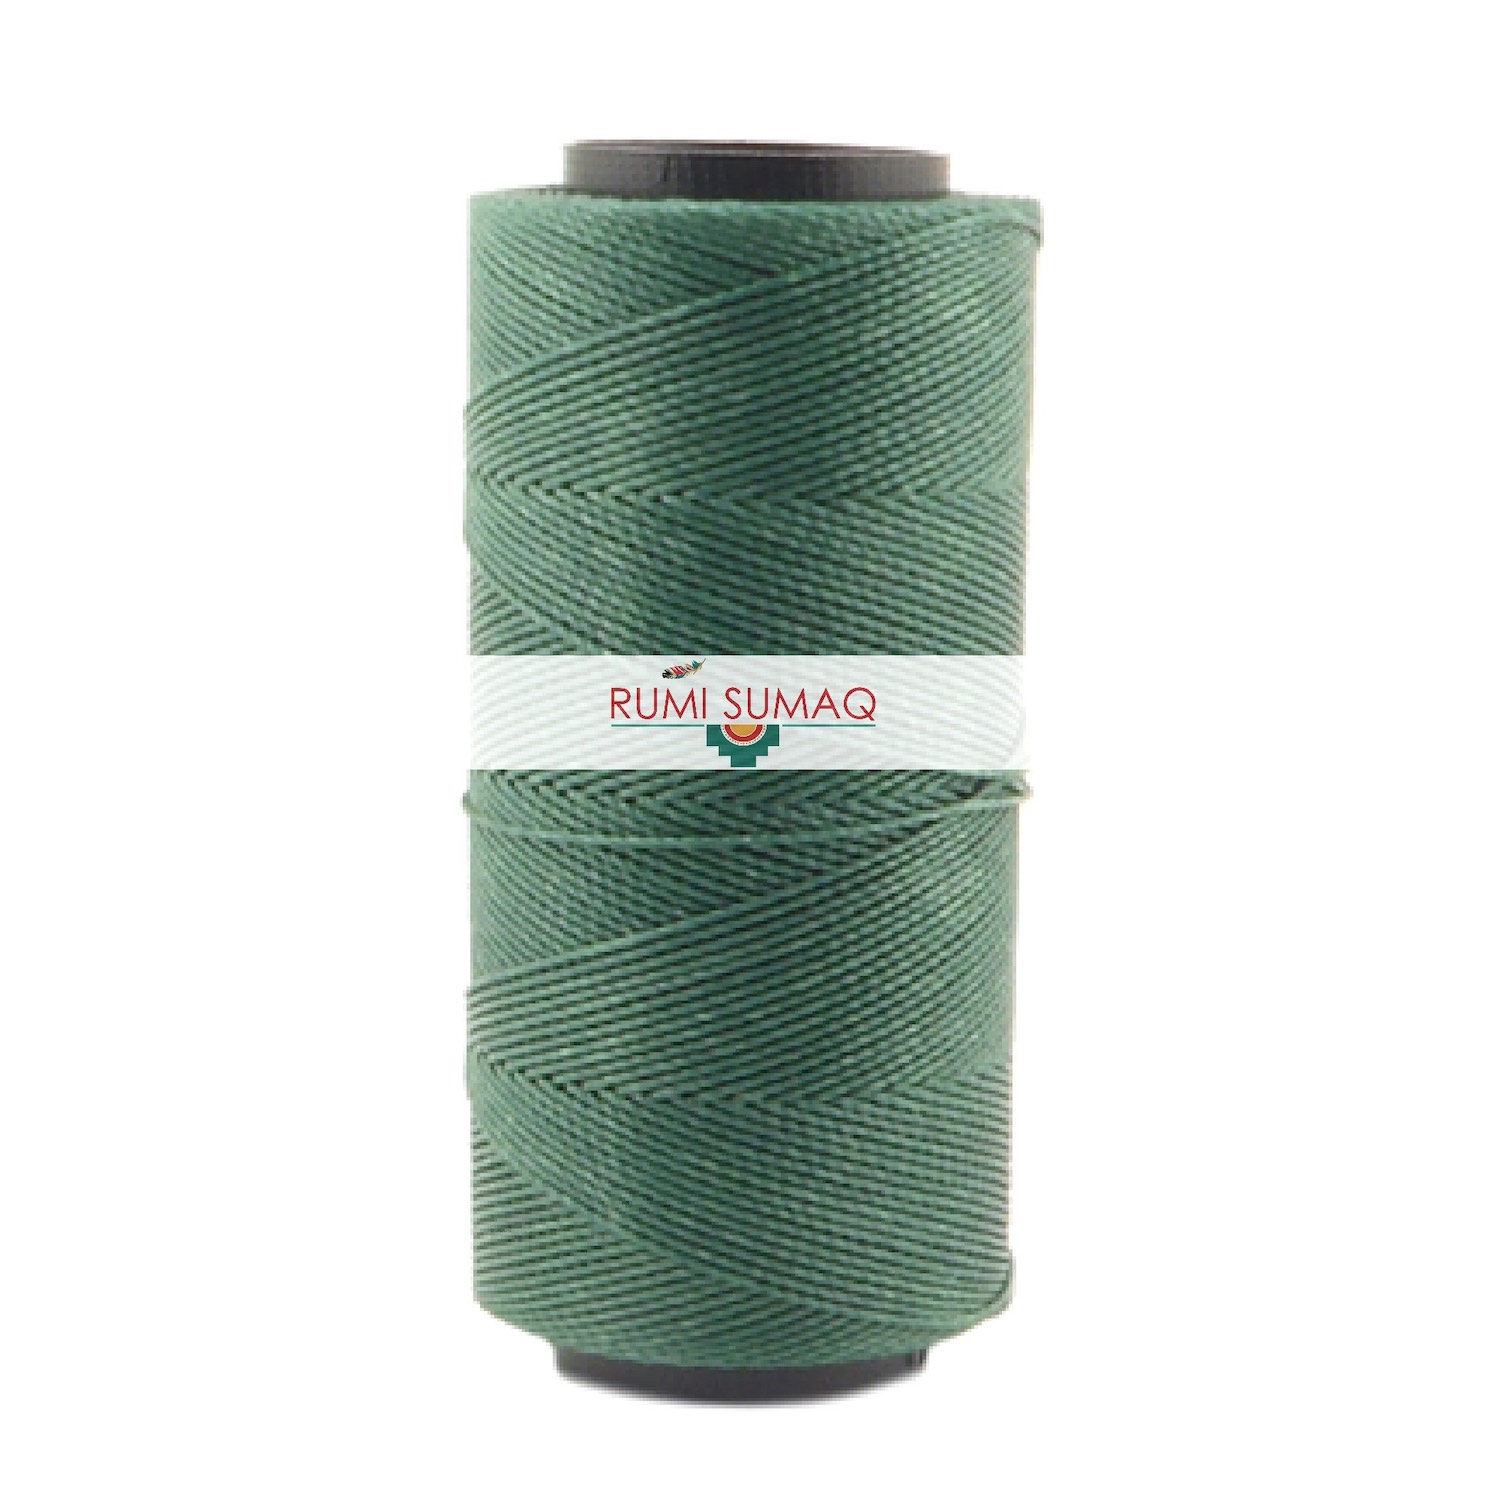 Settanyl 387 Eucalyptus Green Waxed Thread 1mm Waxed Polyester Cord | RUMI SUMAQ Cords